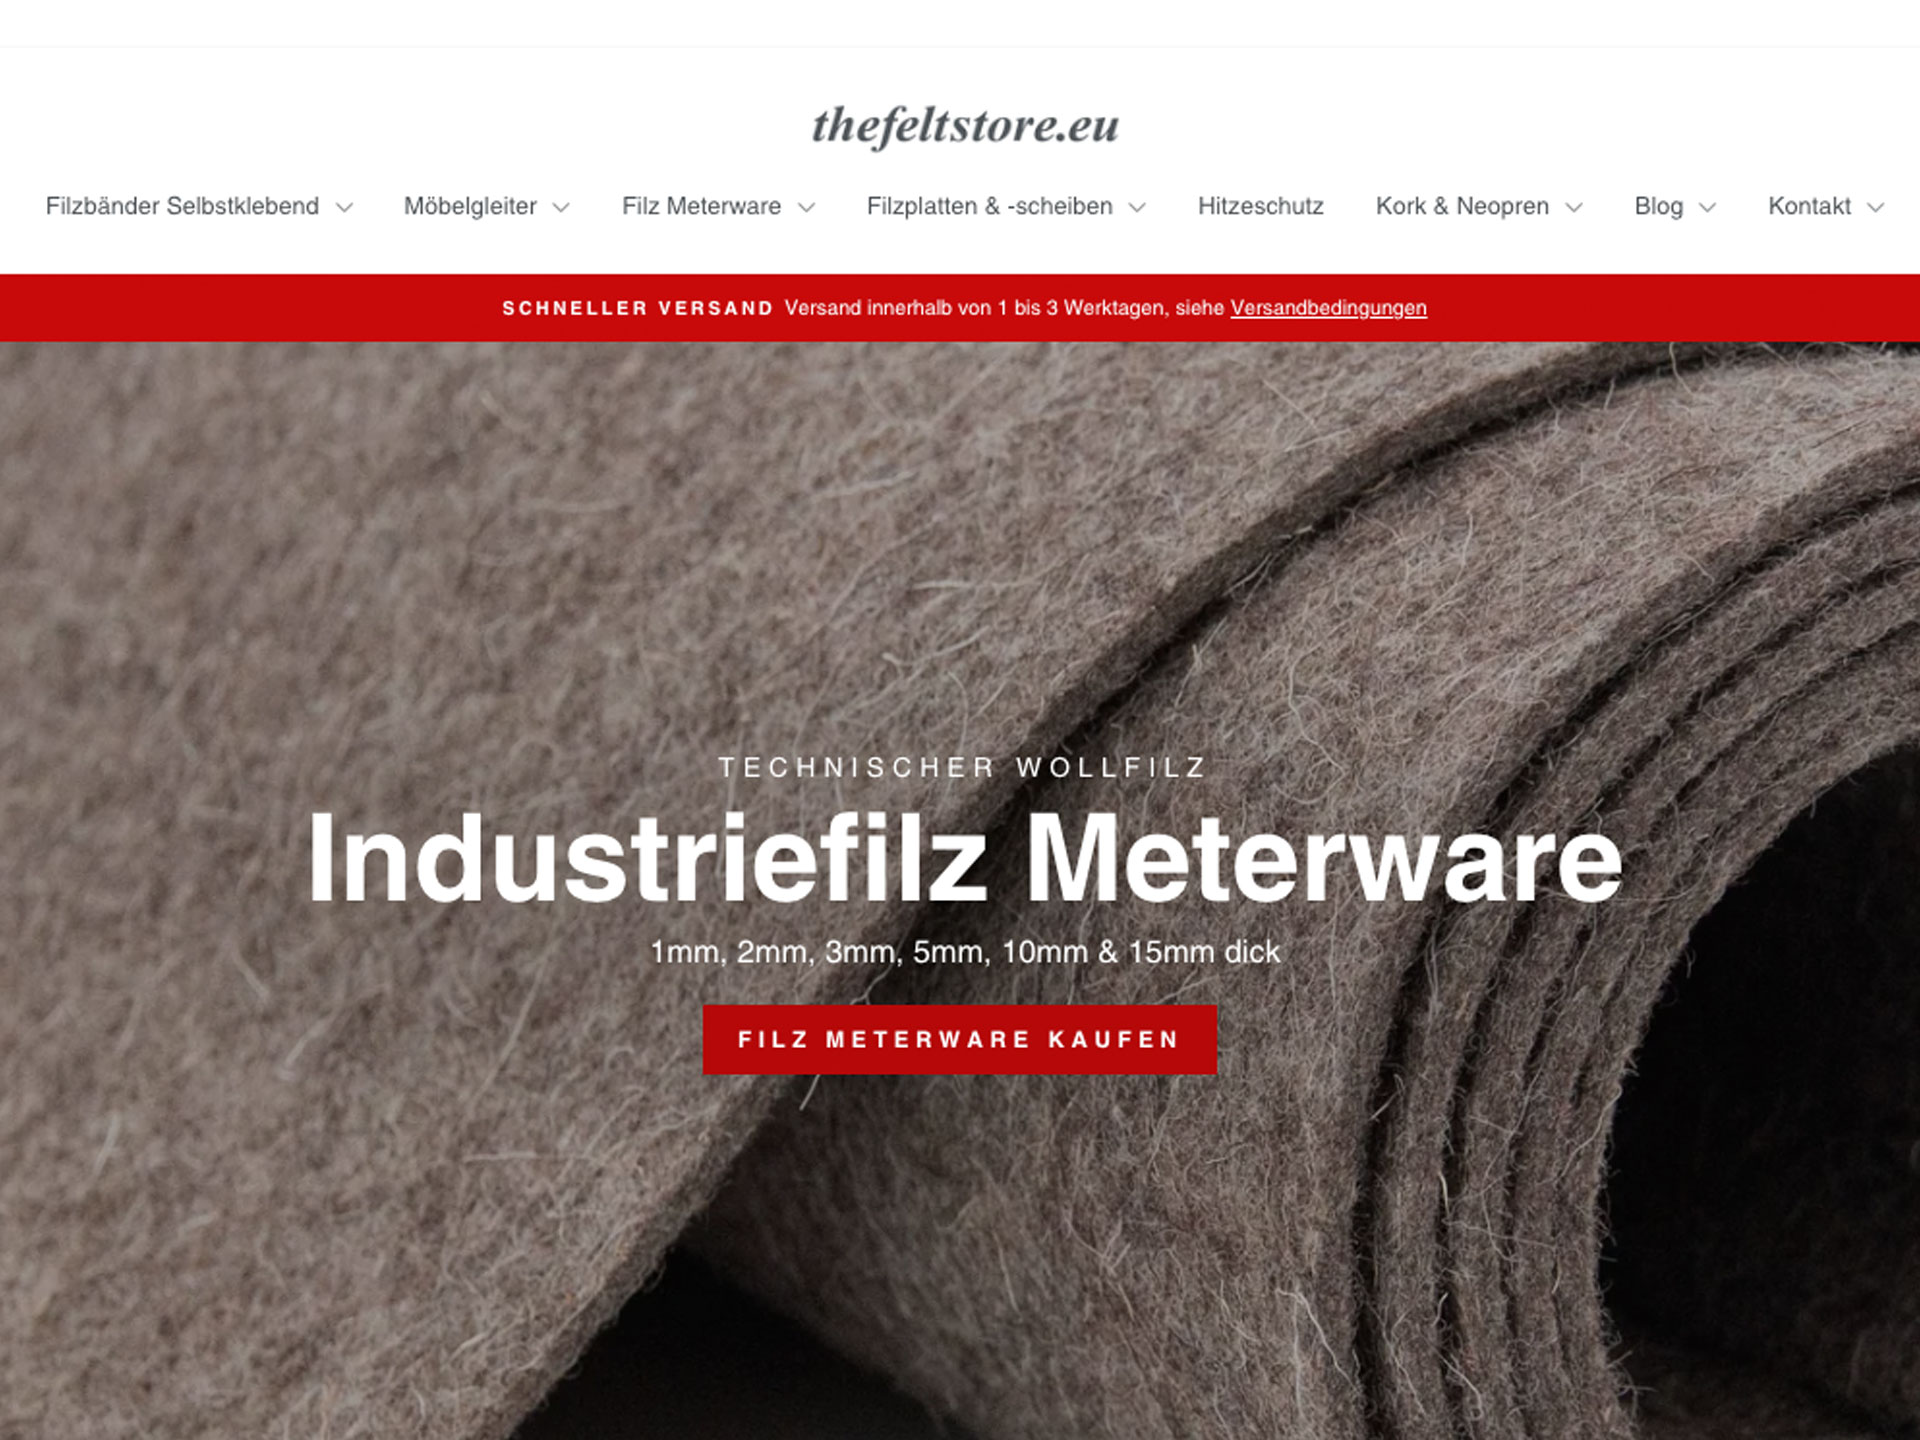 Werksverkauf und Online-Shop - Filzfabrik Gustav Neumann GmbH